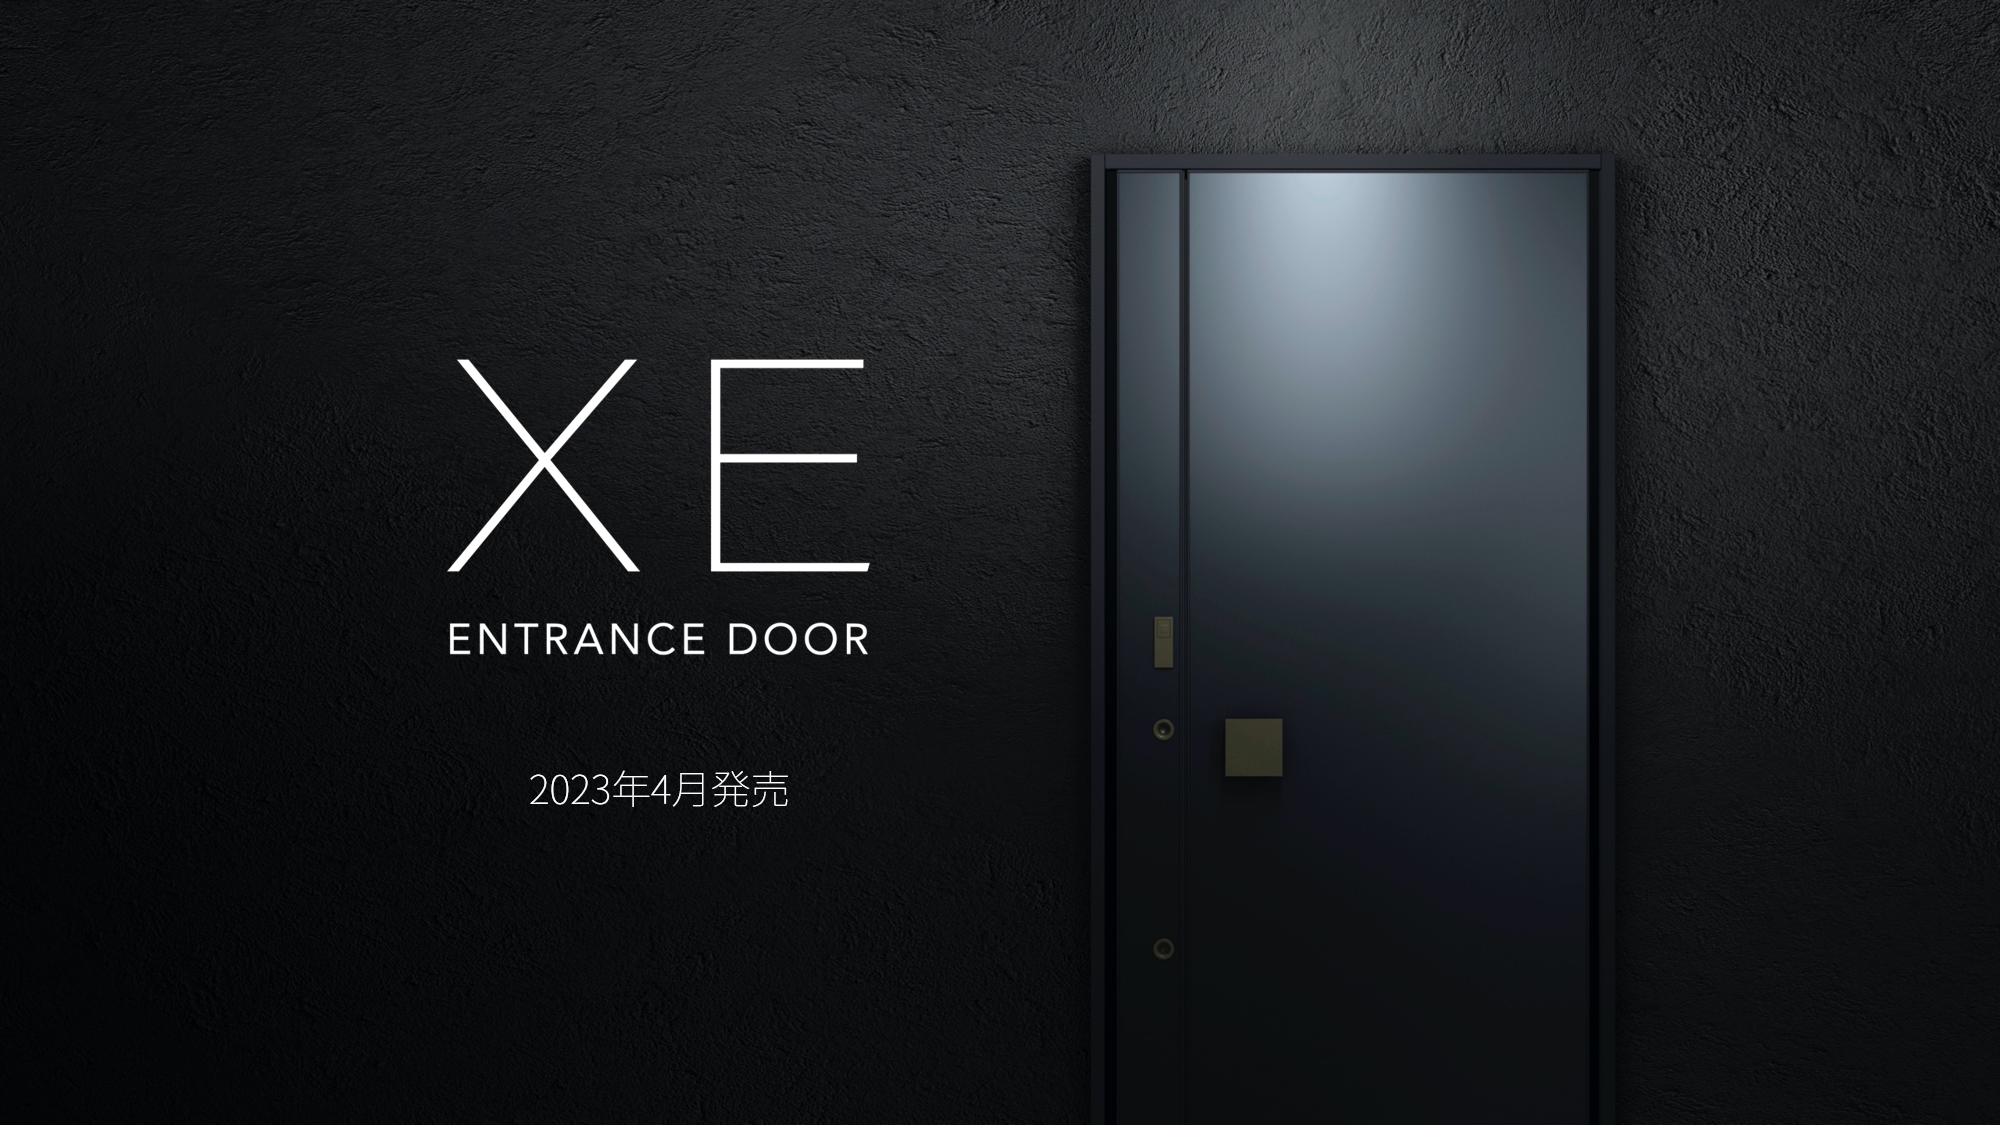 新発想のドアロック機構採用により、革新的なデザインを実現 TOSTEMブランドのフラグシップモデル 次世代玄関ドア「XE」発売 サムネイル画像